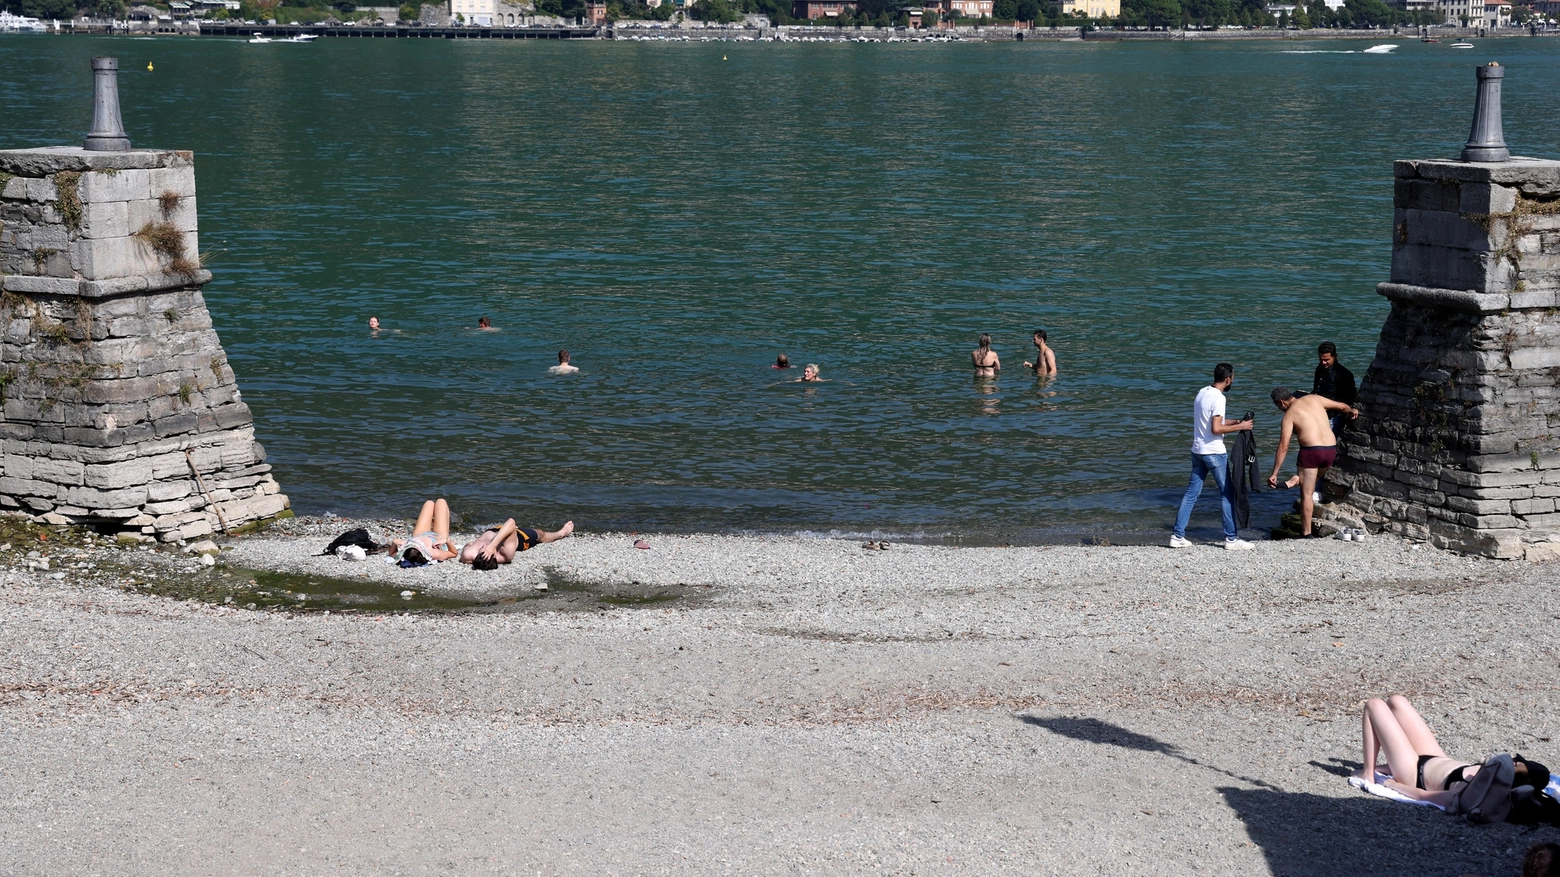 Ondata di caldo: alcune persone fanno il bagno nei pressi della darsena di villa Olmo a Como